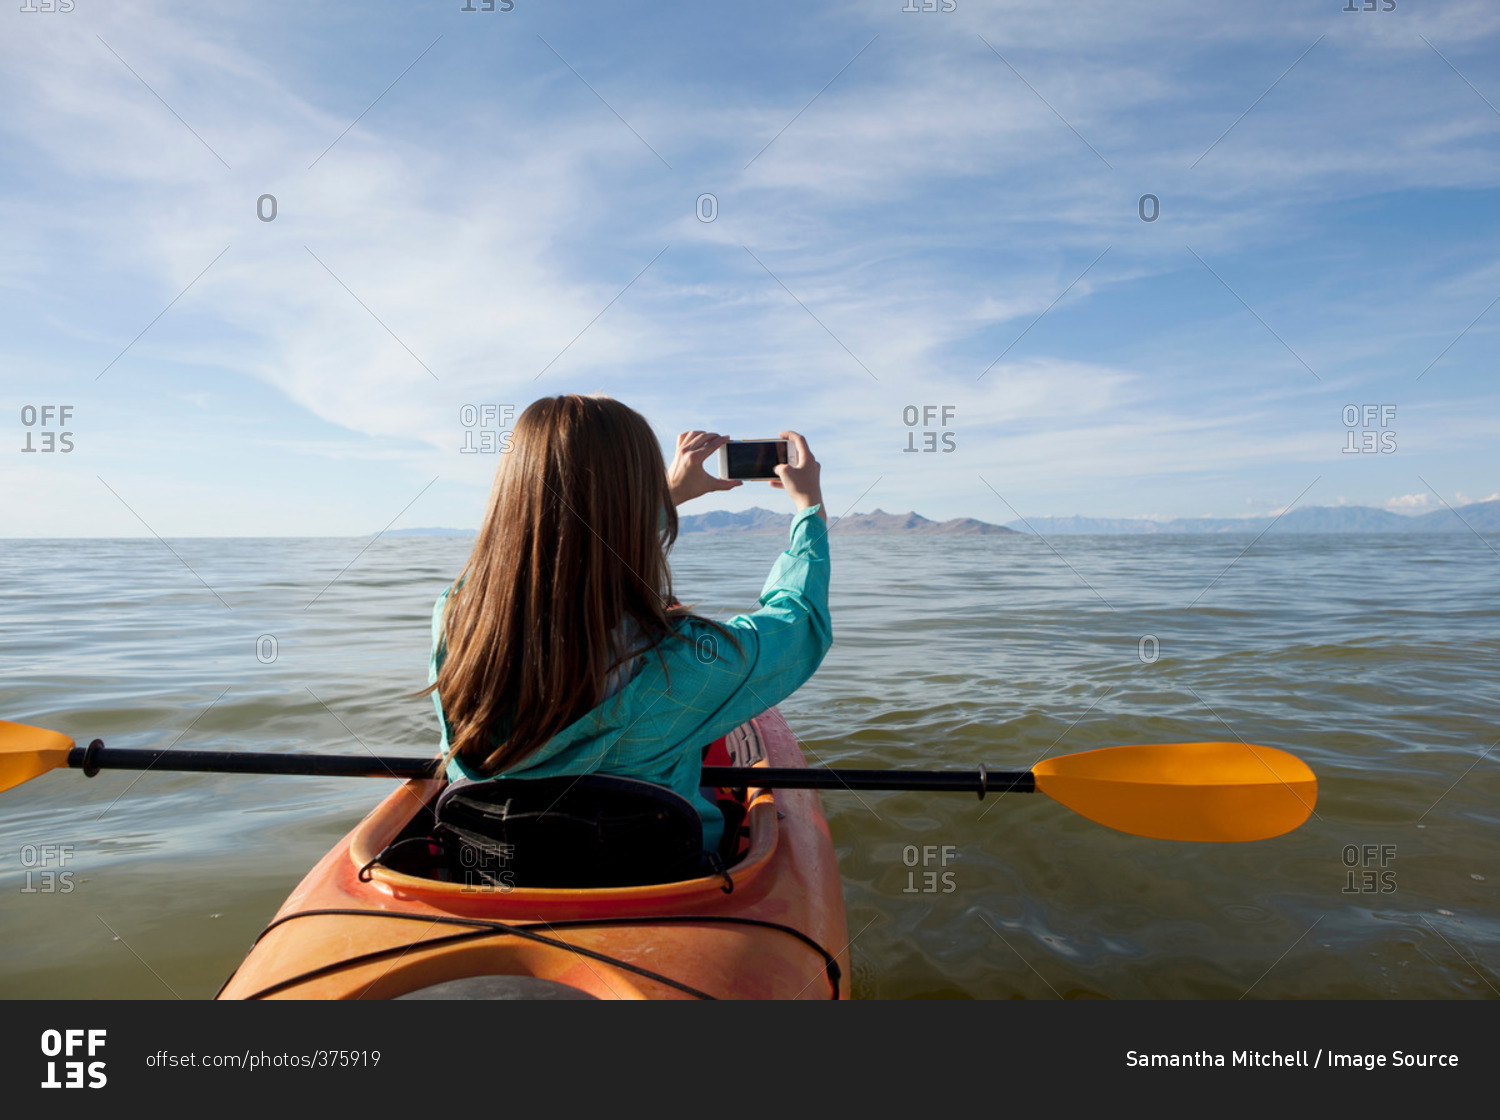 Rear view of young woman in kayak taking photograph, Great Salt Lake, Utah, USA